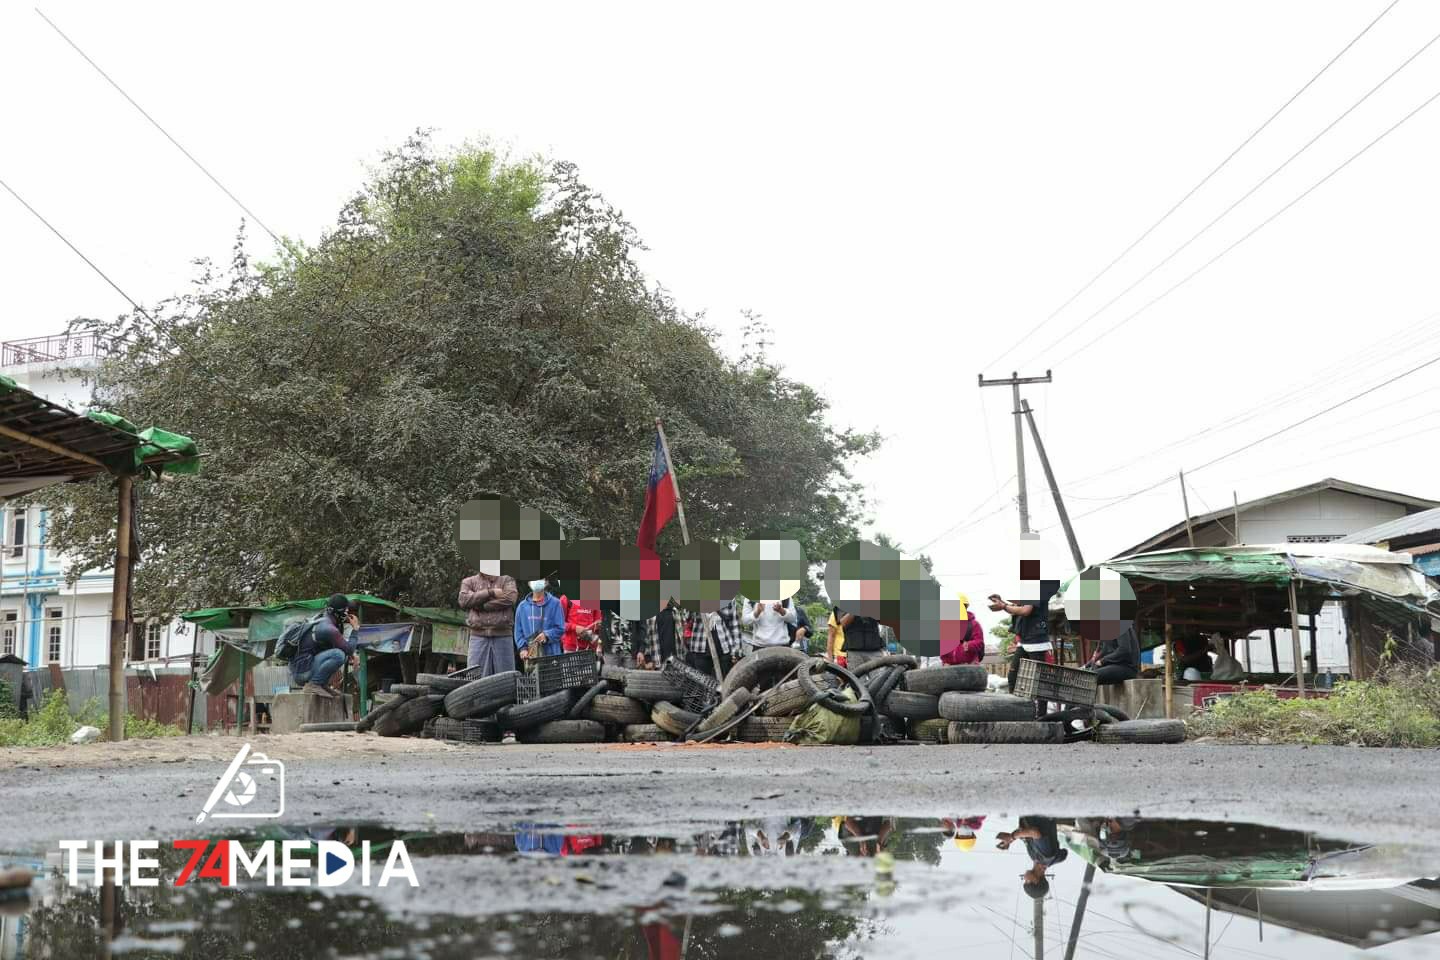 မြစ်ကြီးနားမြို့၊ ရမ်ပူရပ်ကွက်တွင် ခံတပ်ပြုလုပ်ပြီး စစ်အာဏာရှင်စနစ်ဆန့်ကျင်ရေး ဆက်လက်ပြုလုပ်​​နေ။